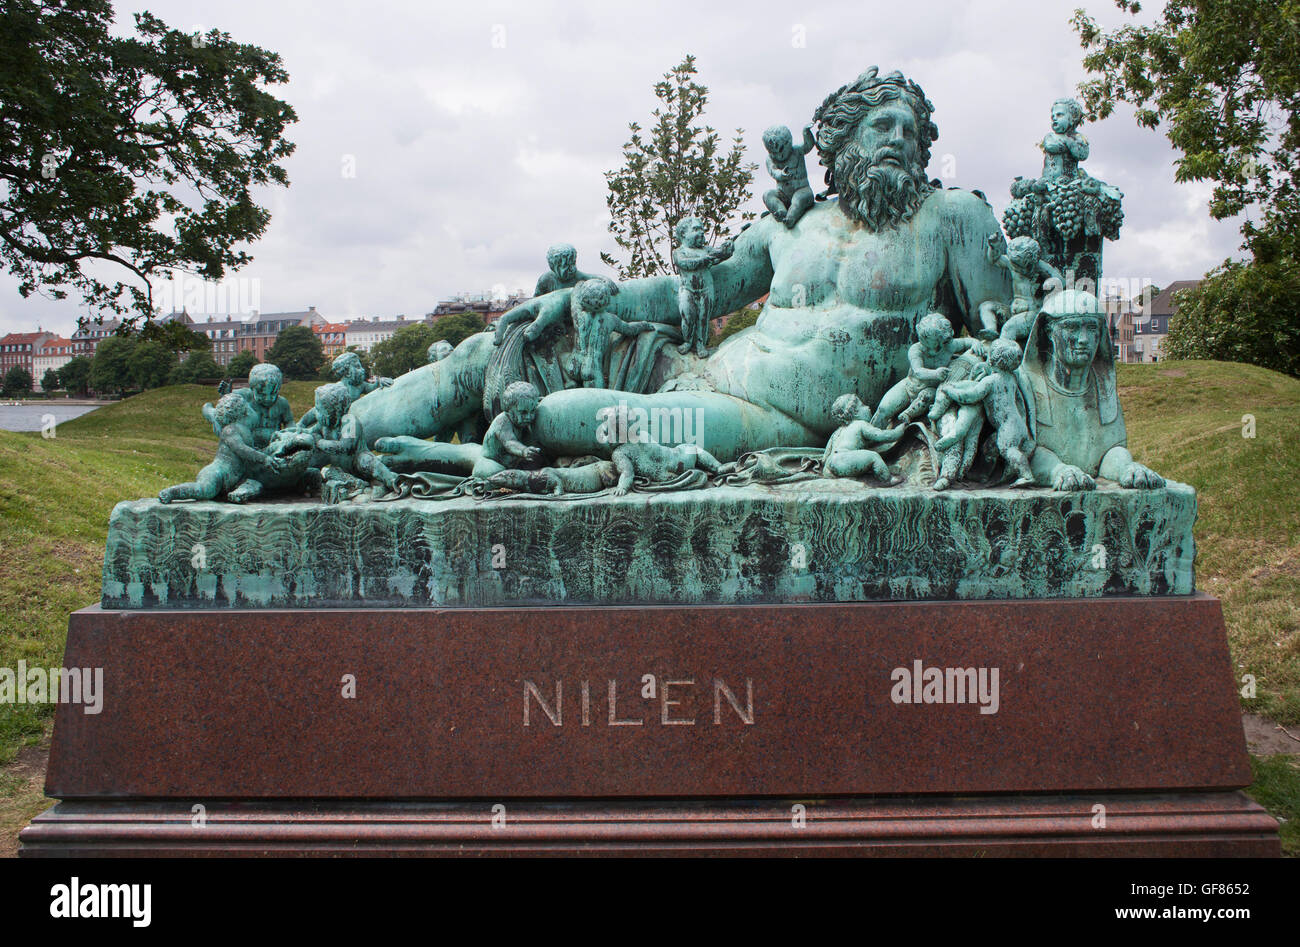 Nilen Mythology statue in Copenhagen Denmark Stock Photo